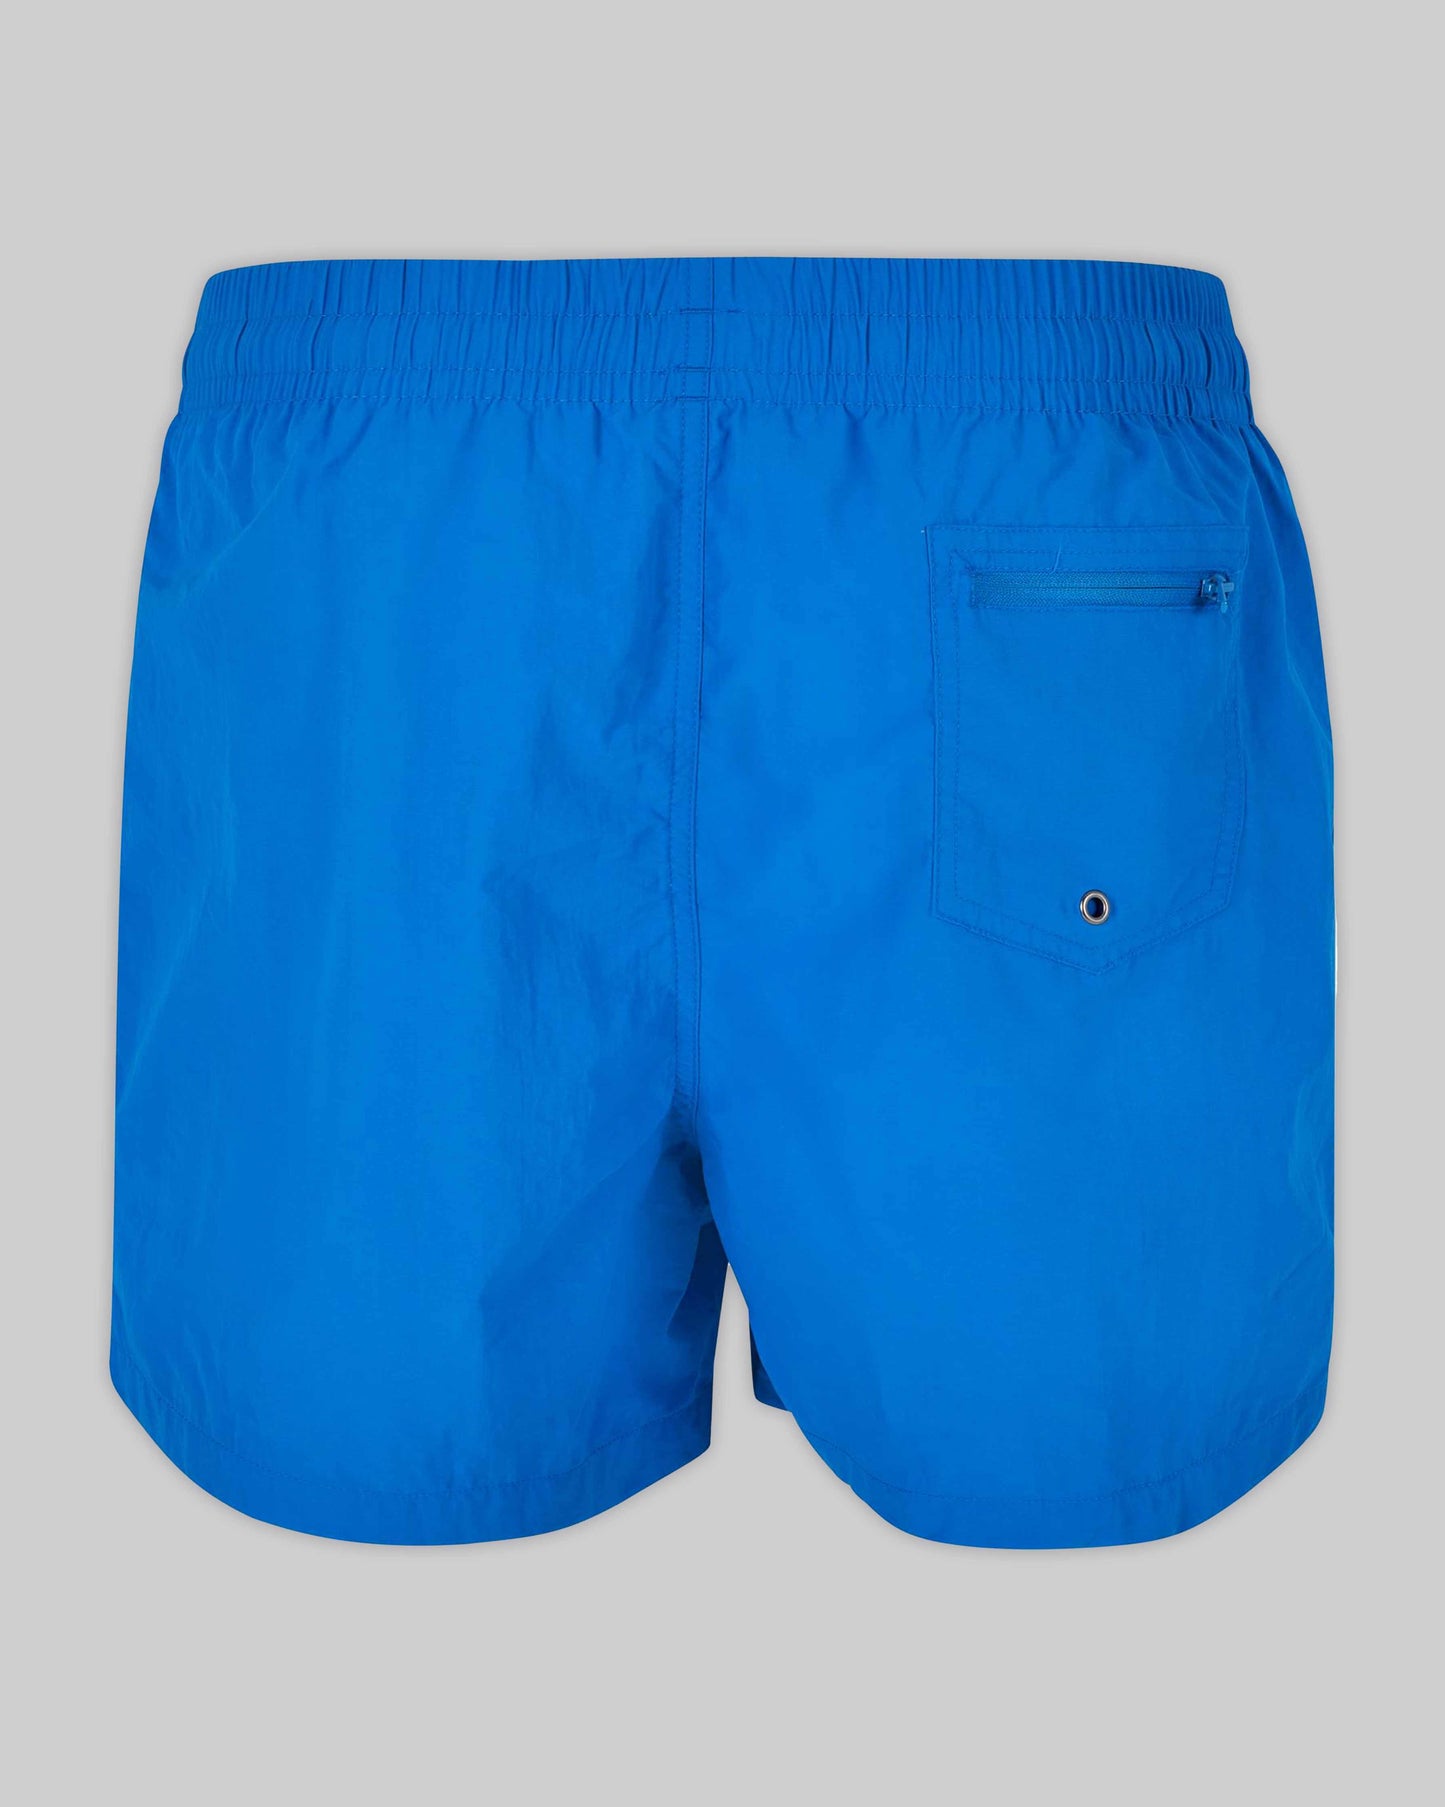 EINHORST® Schwimm- & Sportshorts mit dem Motiv "pride-Regenbogen" in der Farbe "Cobald Blue", Bild von hinten